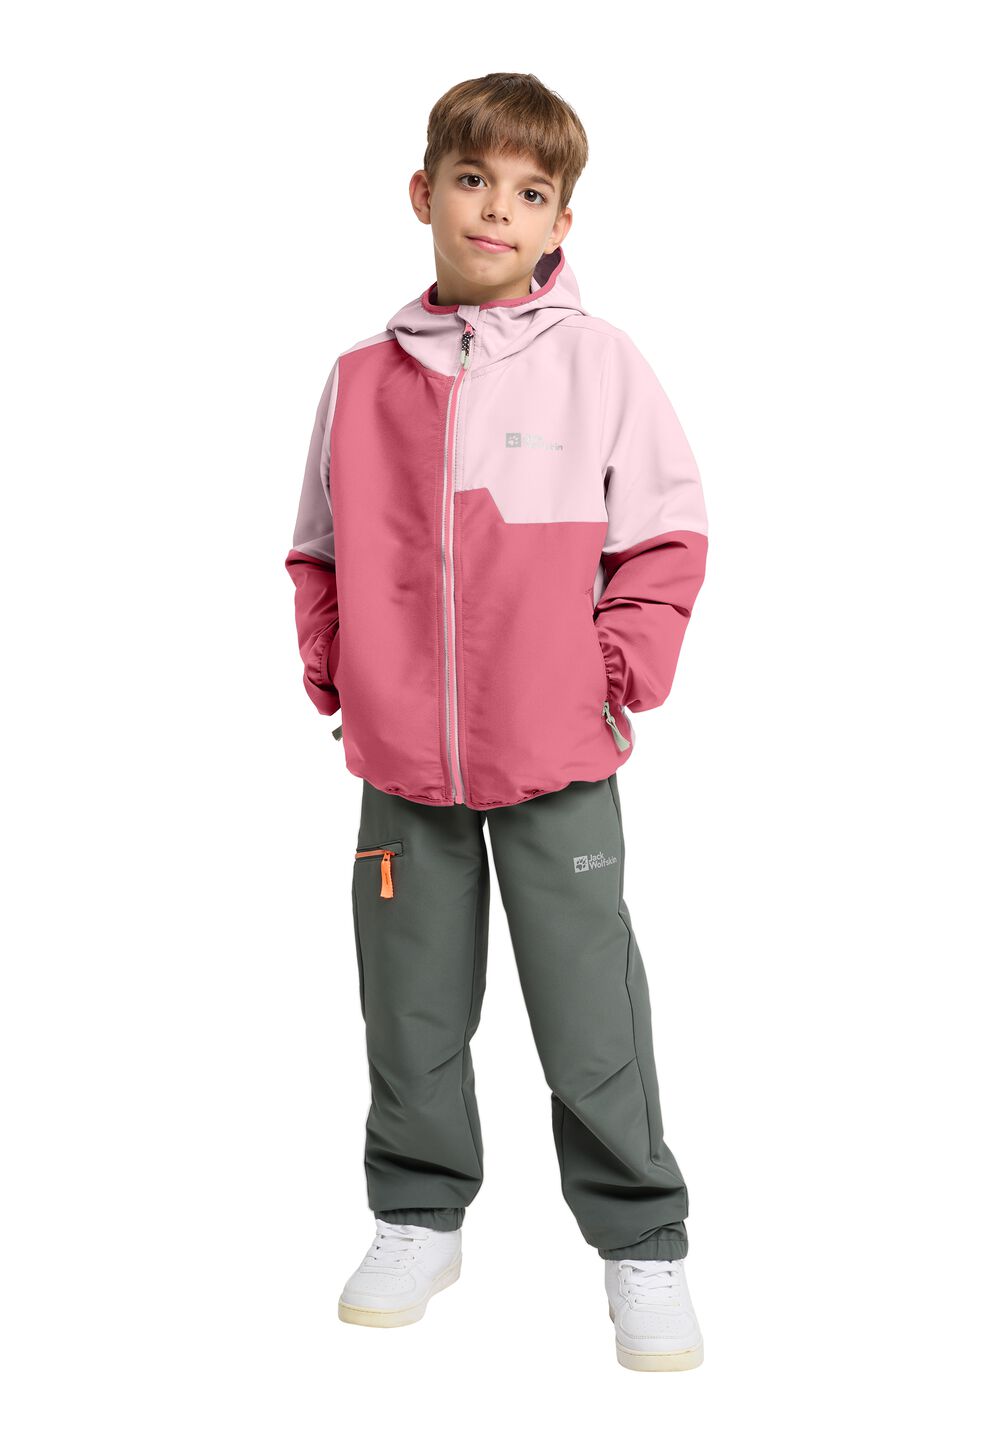 Jack Wolfskin Turbulence Hooded Jacket Kids Softshelljack Kinderen 116 soft pink soft pink